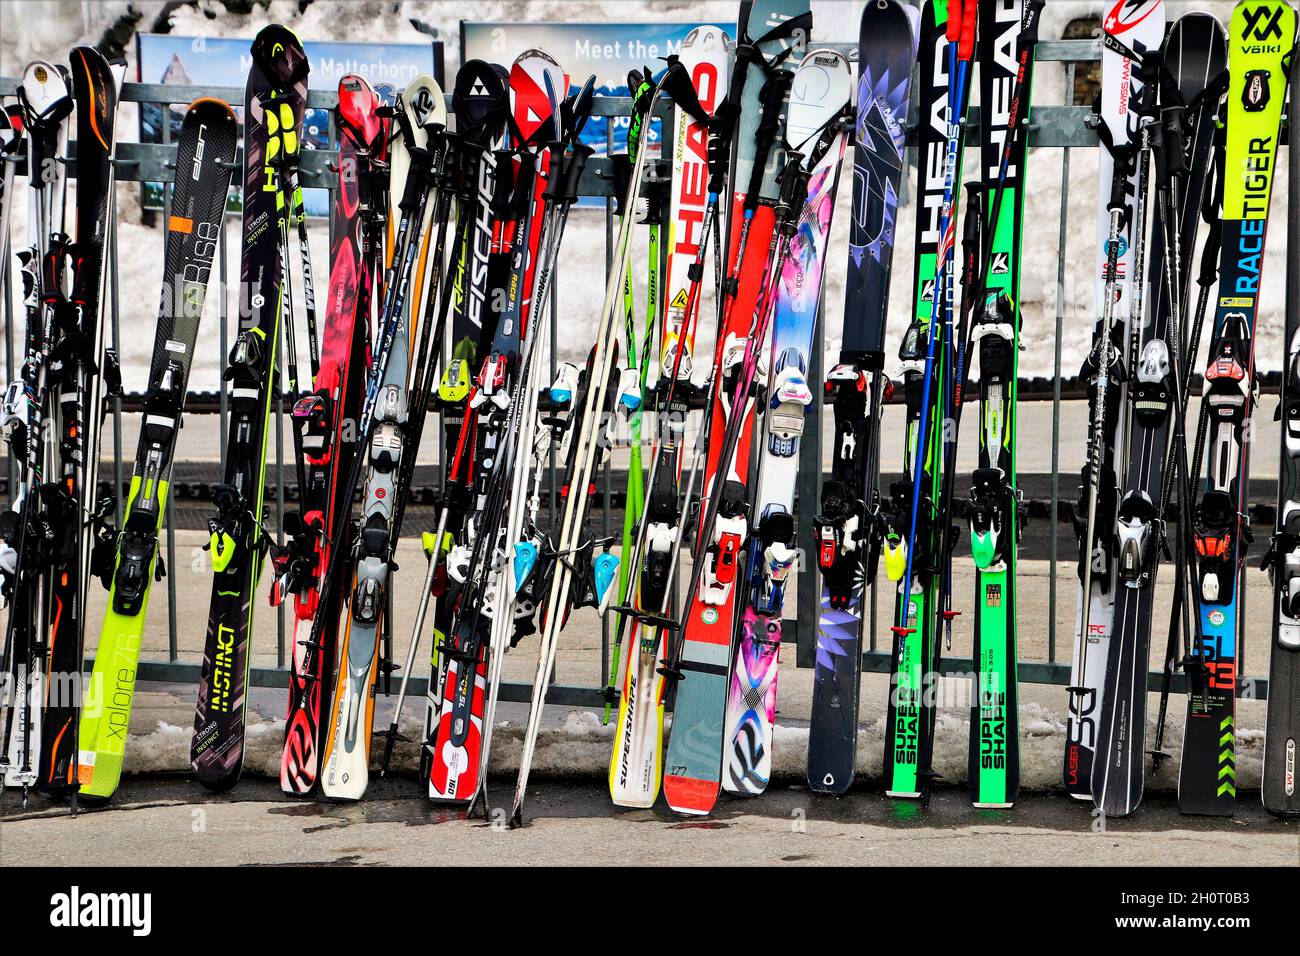 Esquí alineado en la estación de esquí, para el alquiler de forfaits en invierno nevado, alpes suizos Foto de stock